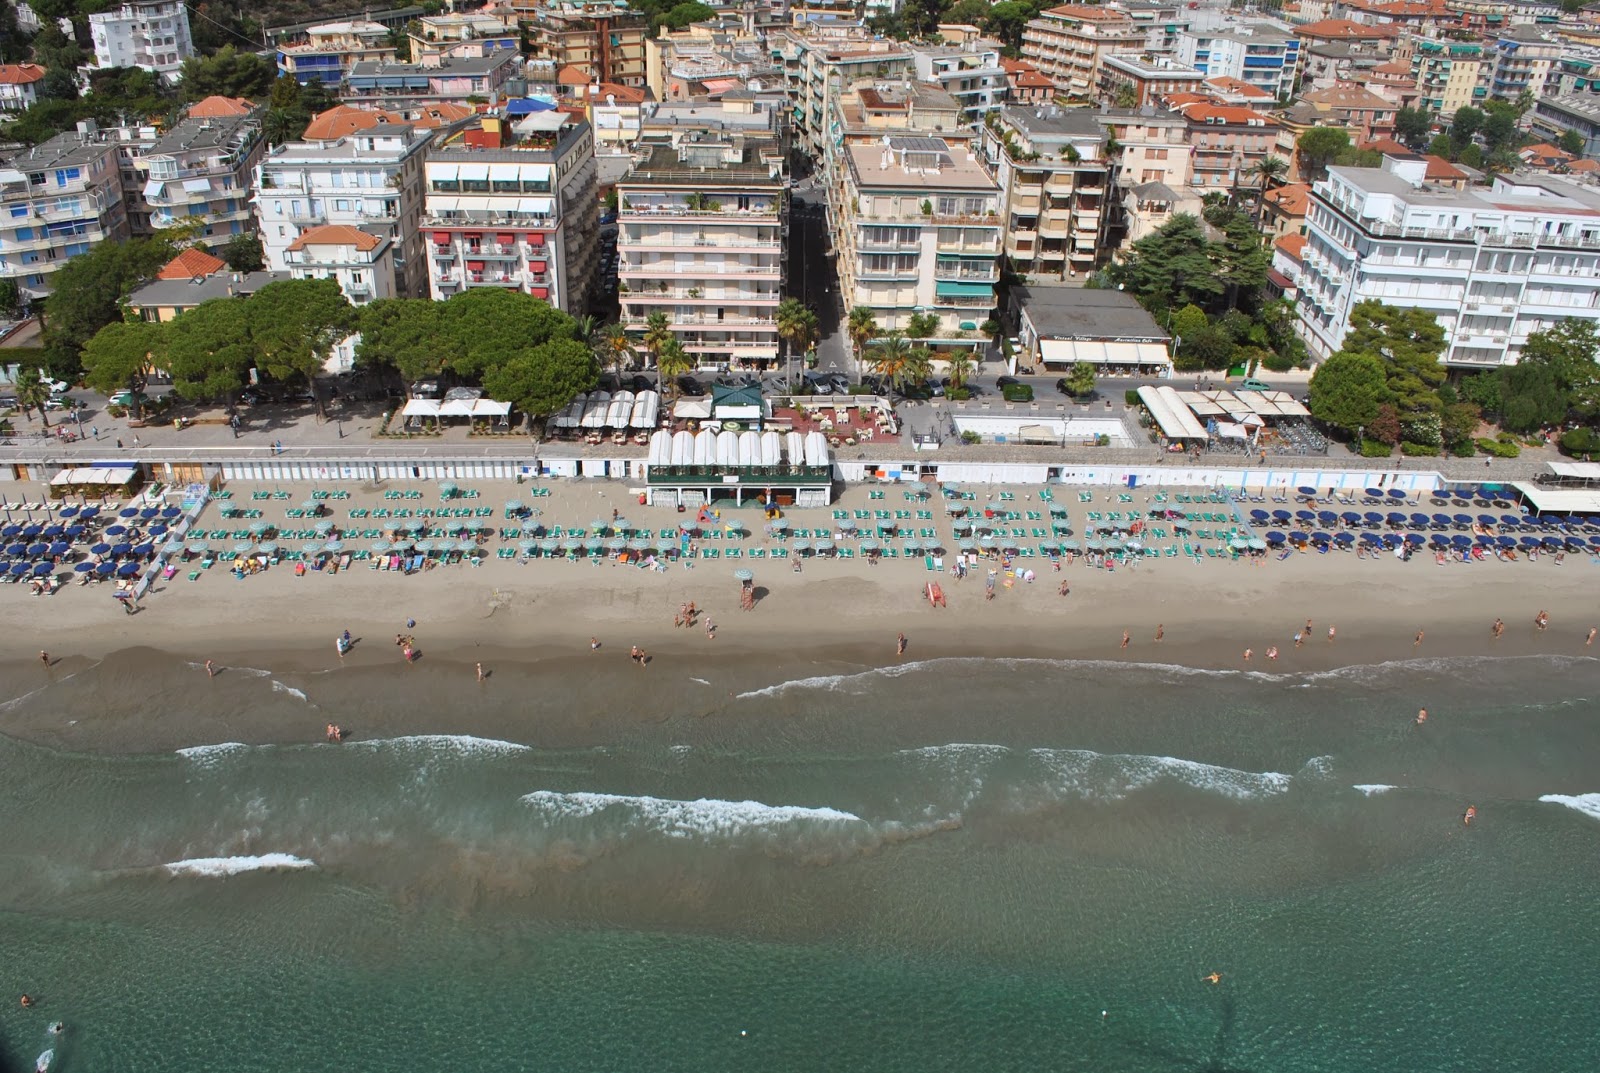 Foto de Spiaggia Attrezzata área de complejo turístico de playa